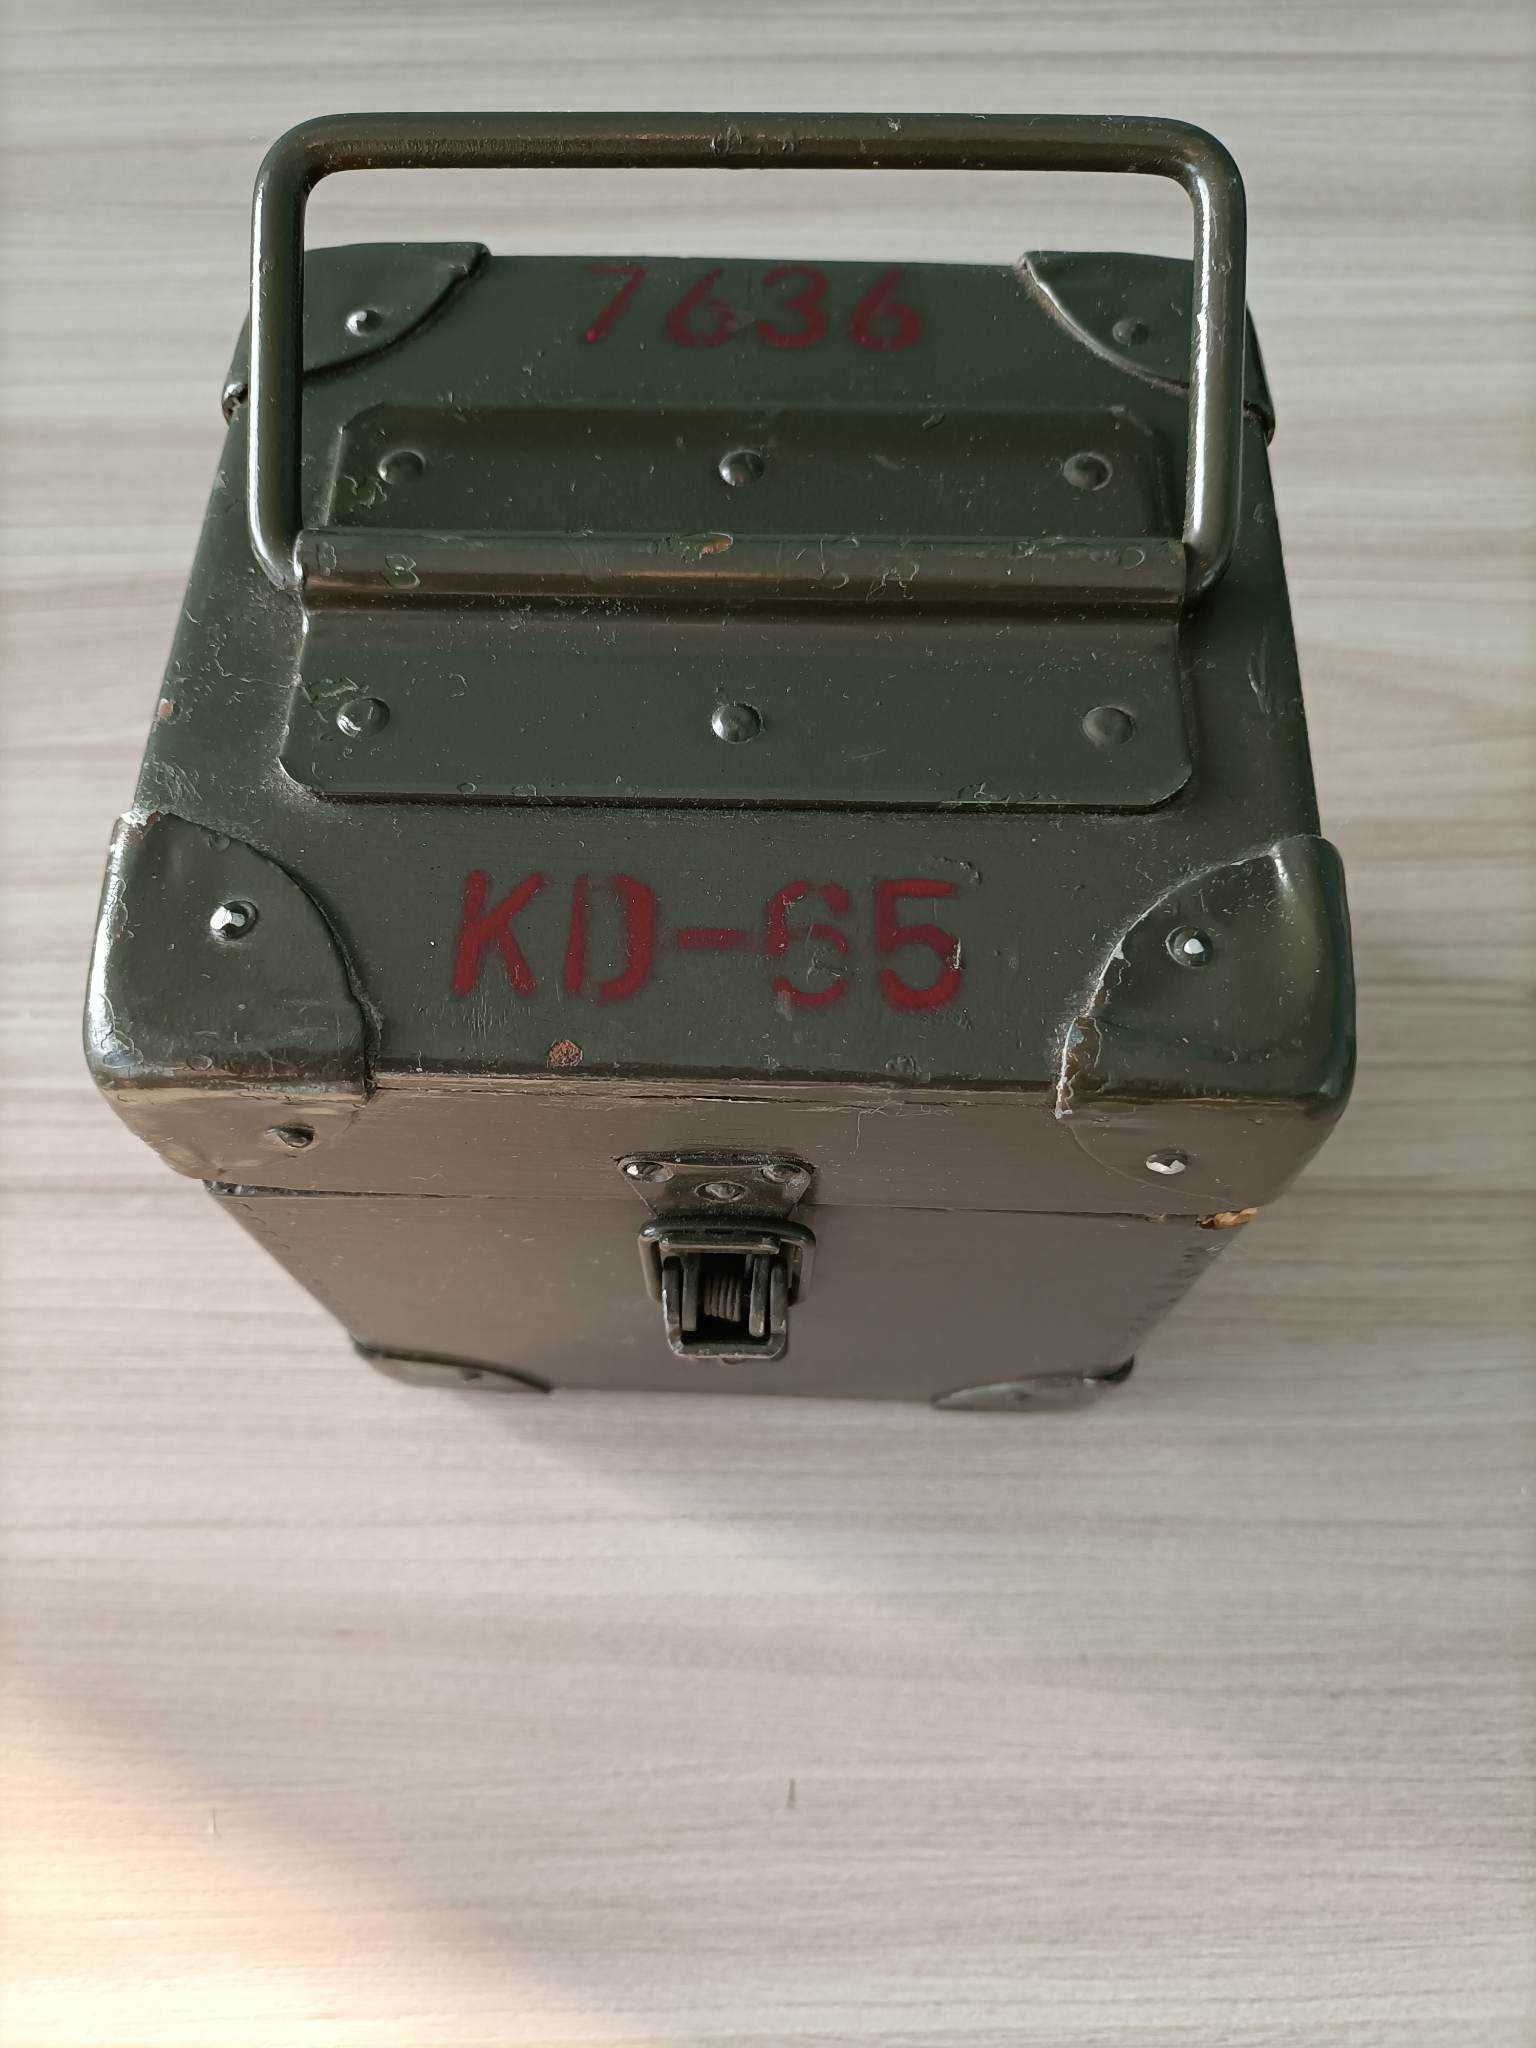 Rentgenoradiometr KD-65 + ważne świadectwo kalibracji. Na sztuki!